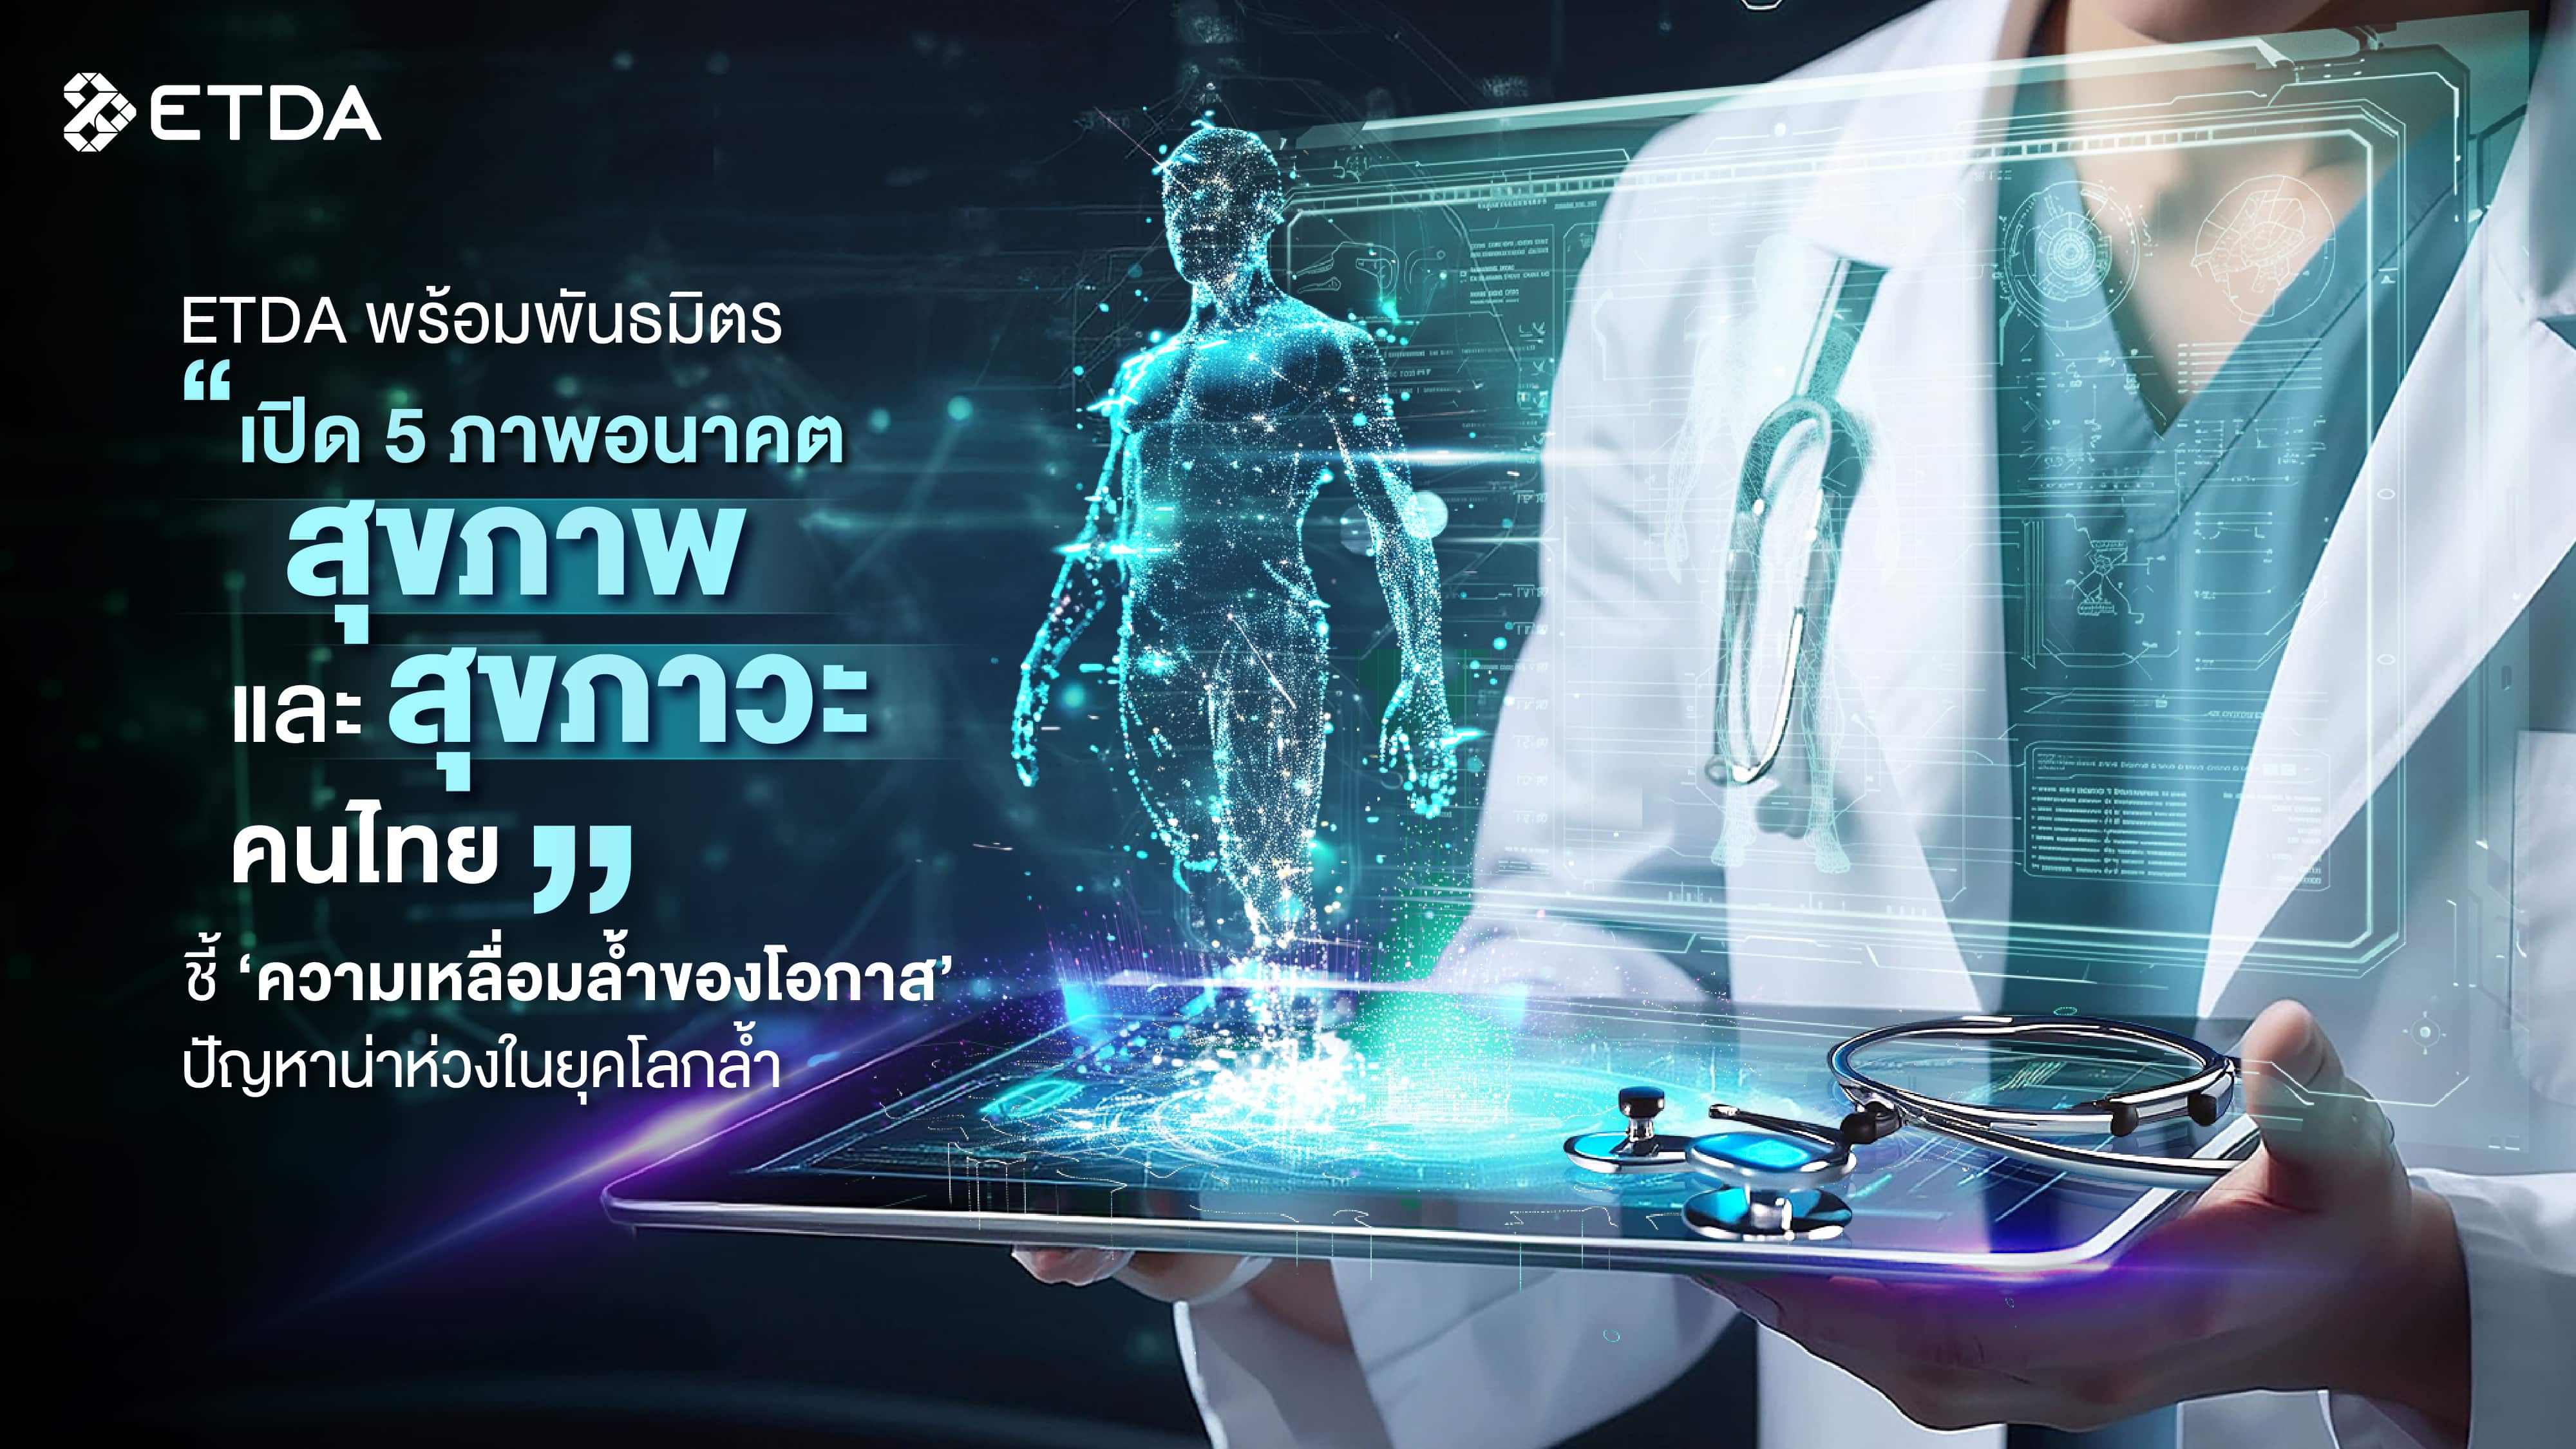 ETDA พร้อมพันธมิตร เปิด 5 ภาพอนาคต “สุขภาพและสุขภาวะคนไทย”  ชี้ ‘ความเหลื่อมล้ำของโอกาส’ ปัญหาน่าห่วง ในยุคโลกล้ำ